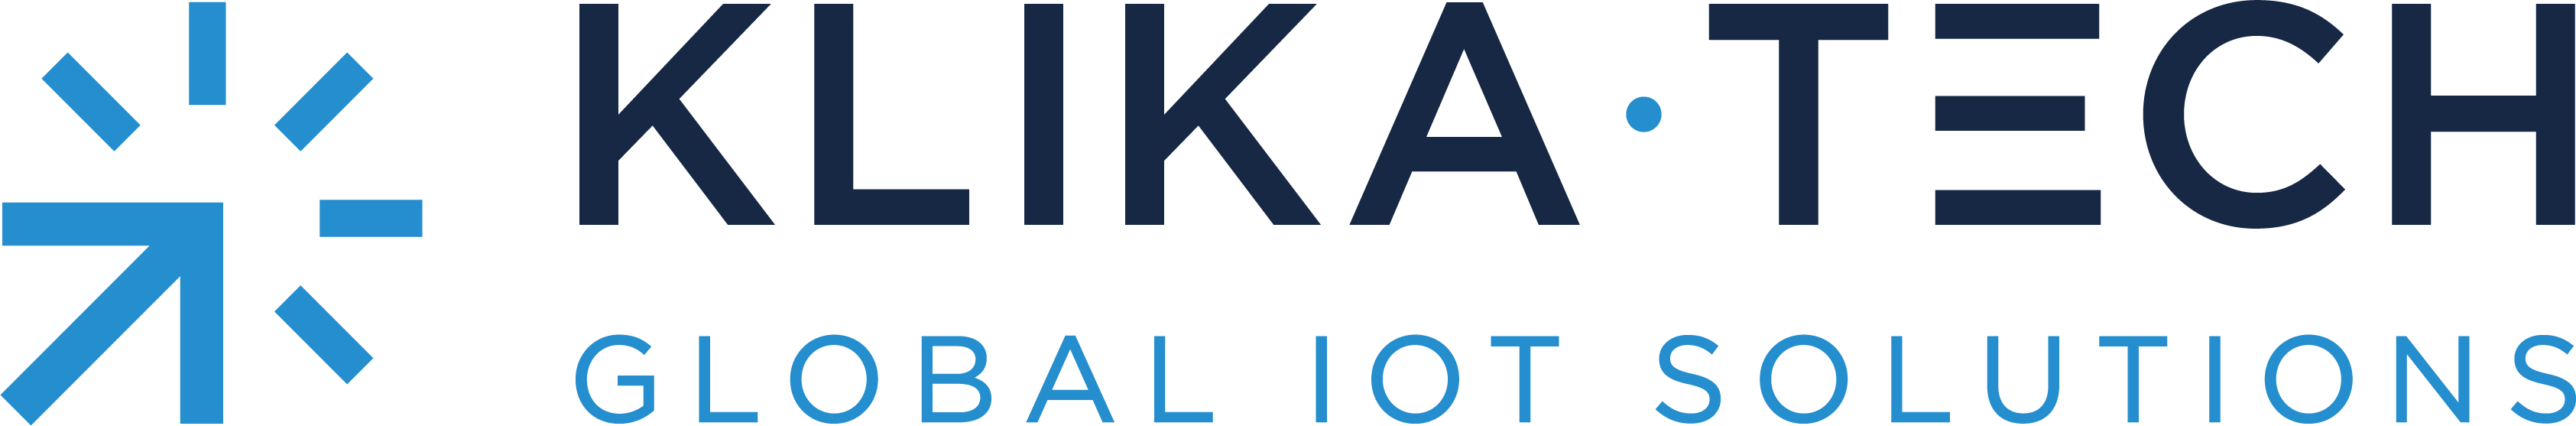 KT_logo_full